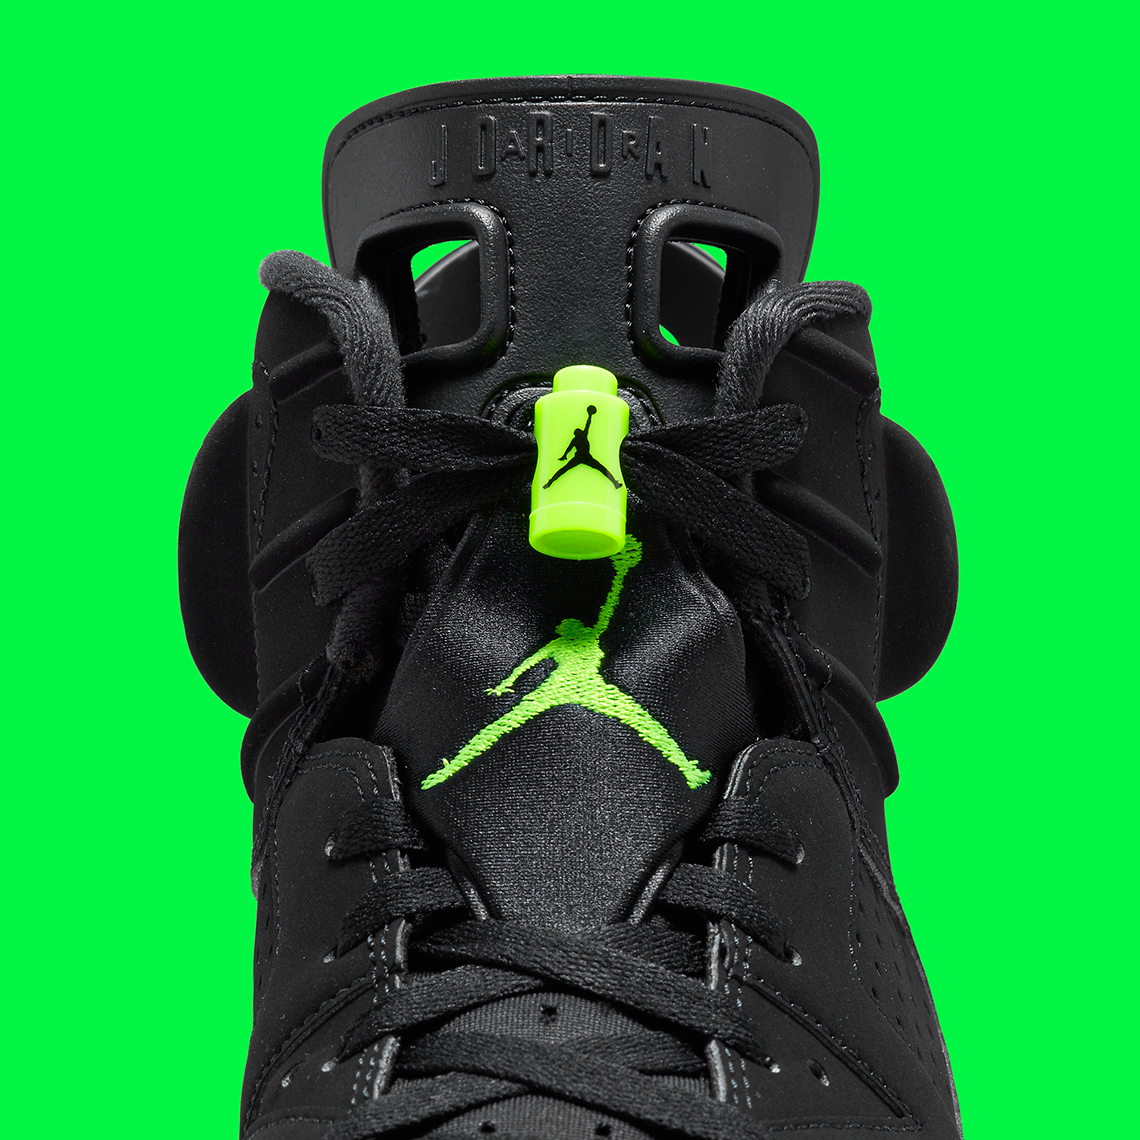 Air Jordan 6 Electric Green Black CT8529-003 Retro | SneakerNews.com